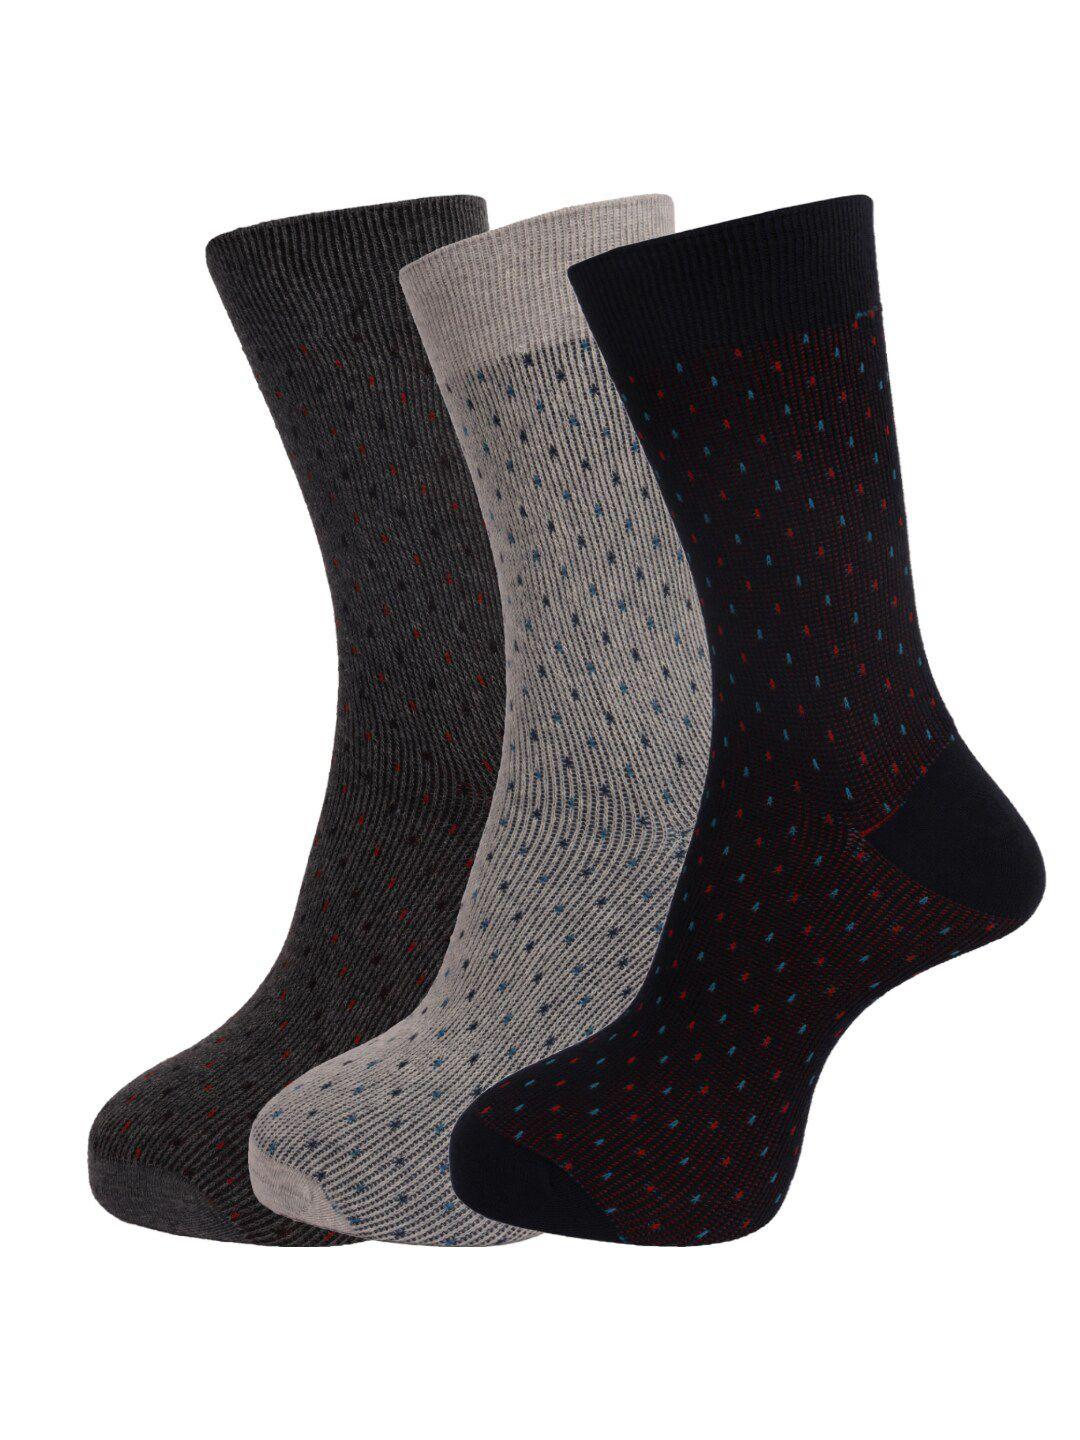 dollar-socks-men-pack-of-3-assorted-full-length-socks